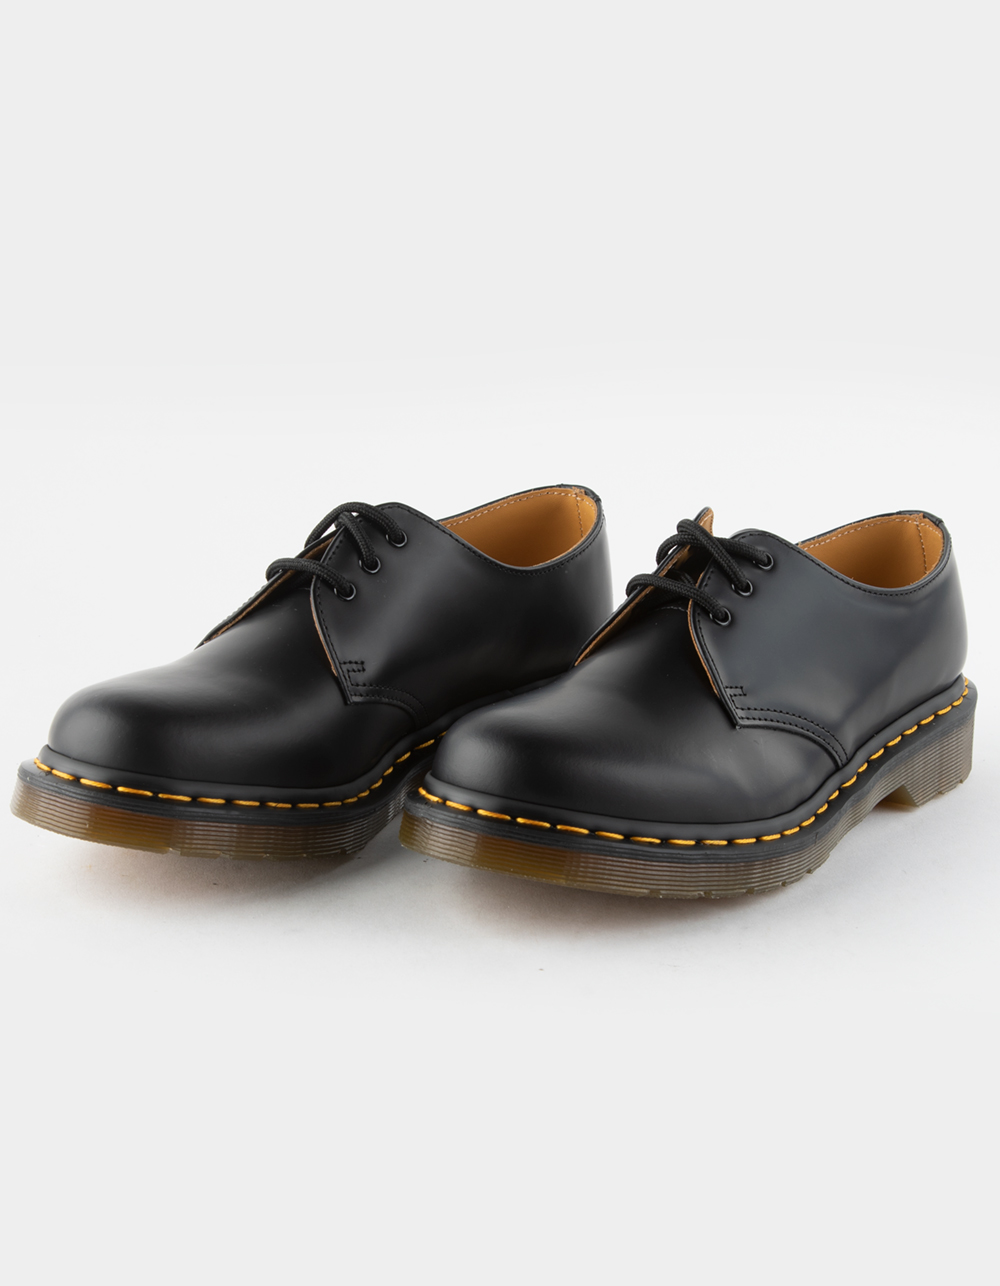 favorit aktivitet ifølge DR. MARTENS 1461 Womens Smooth Leather Oxford Shoes - BLACK | Tillys